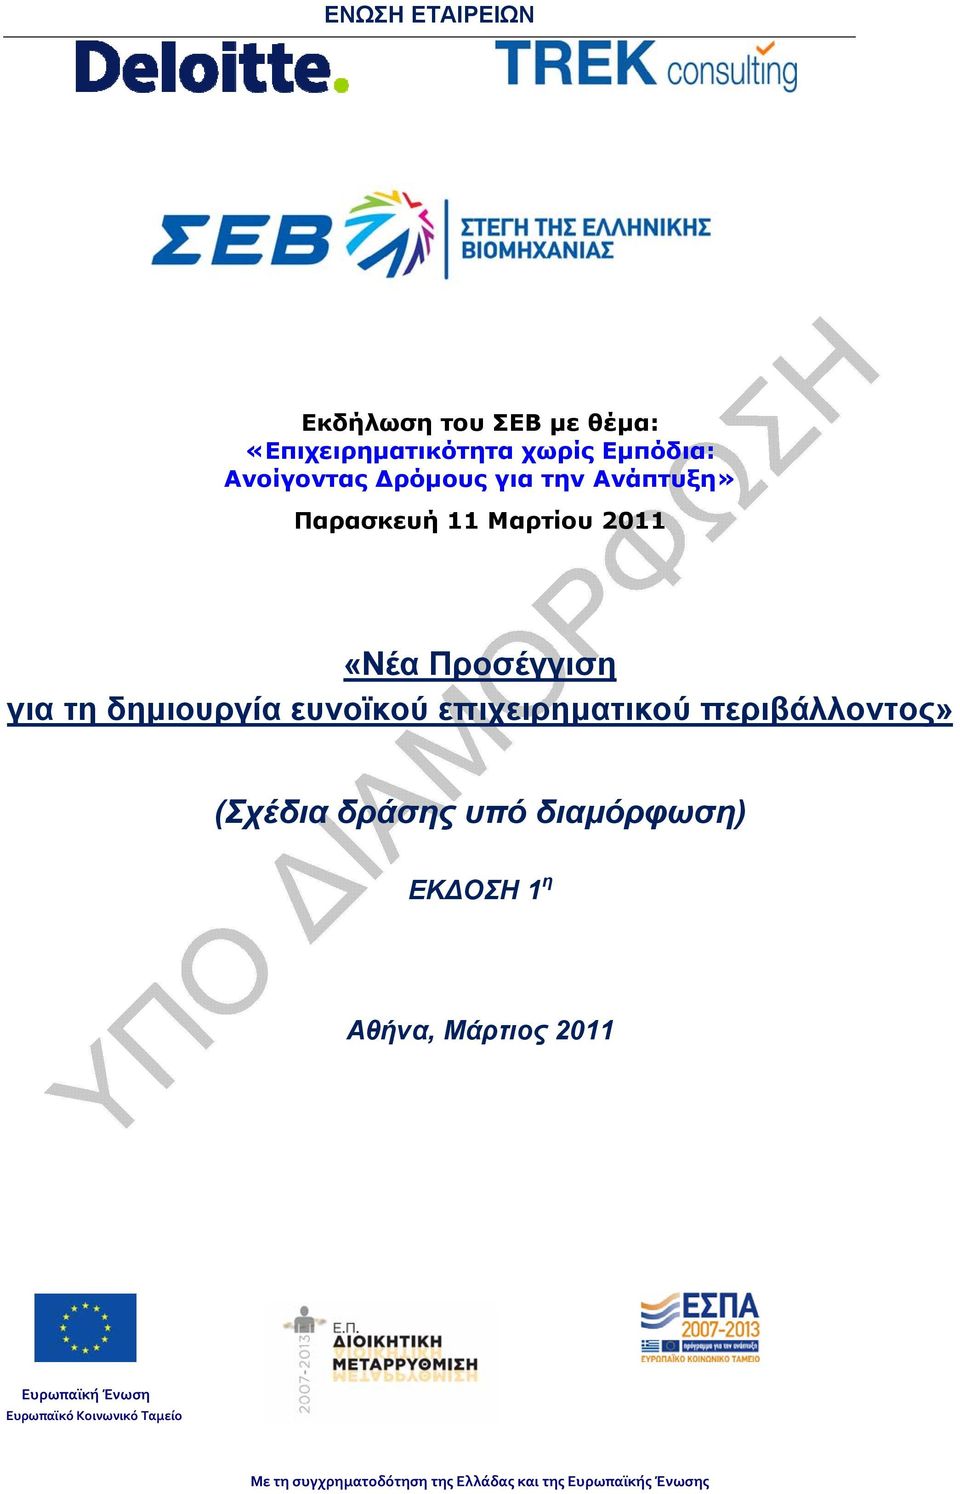 επιχειρηματικού περιβάλλοντος» (Σχέδια δράσης υπό διαμόρφωση) ΕΚ ΟΣΗ 1 η Αθήνα, Μάρτιος 2011